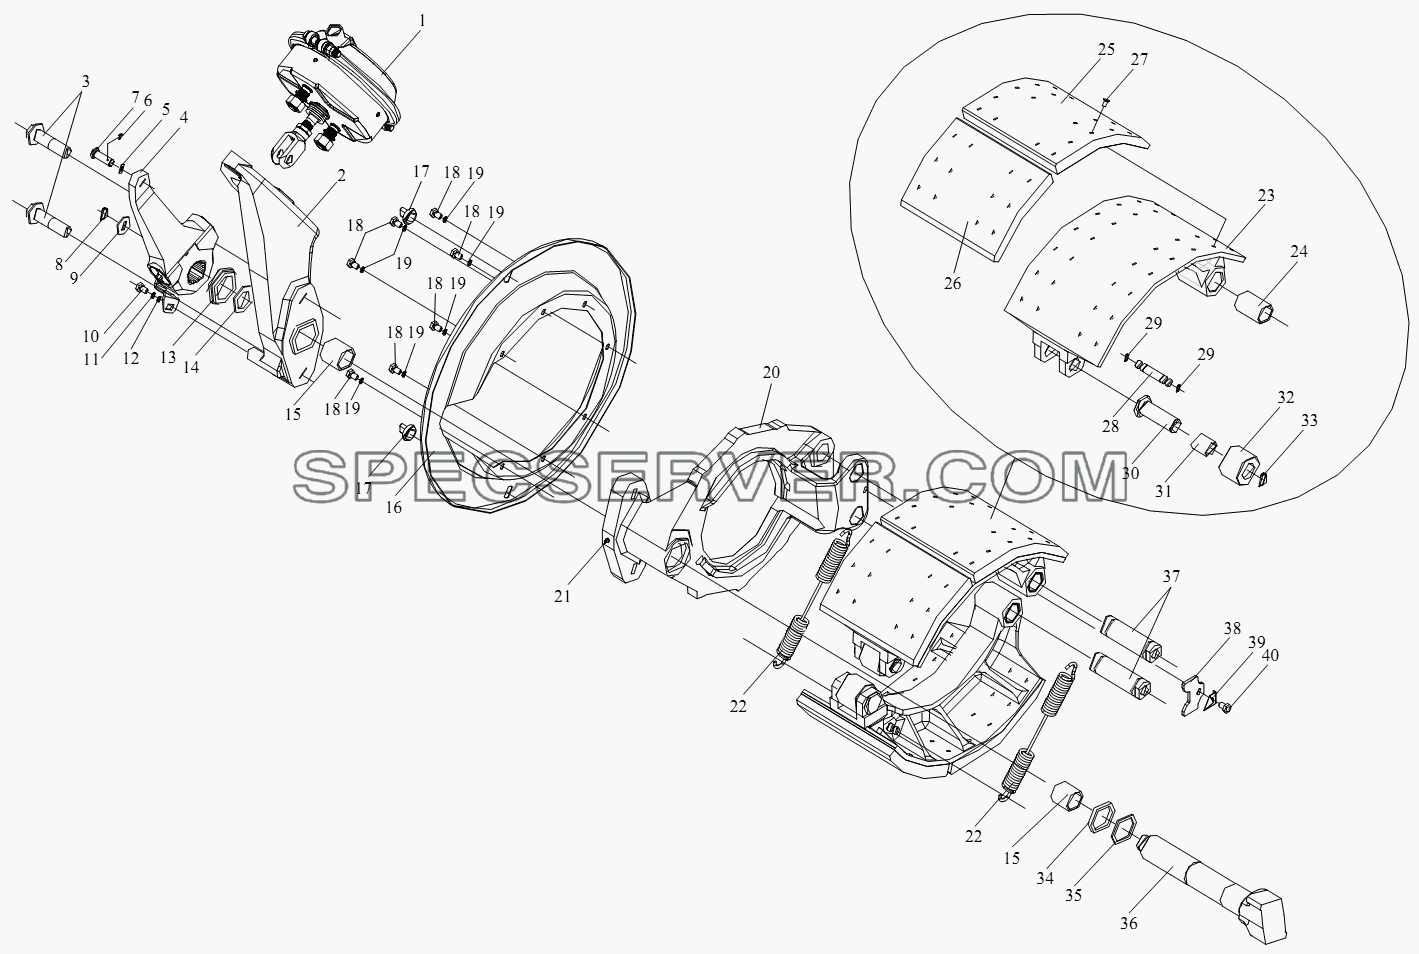 Тормоз переднего колеса для СА-4250 (P66K22T1A1EX) (список запасных частей)